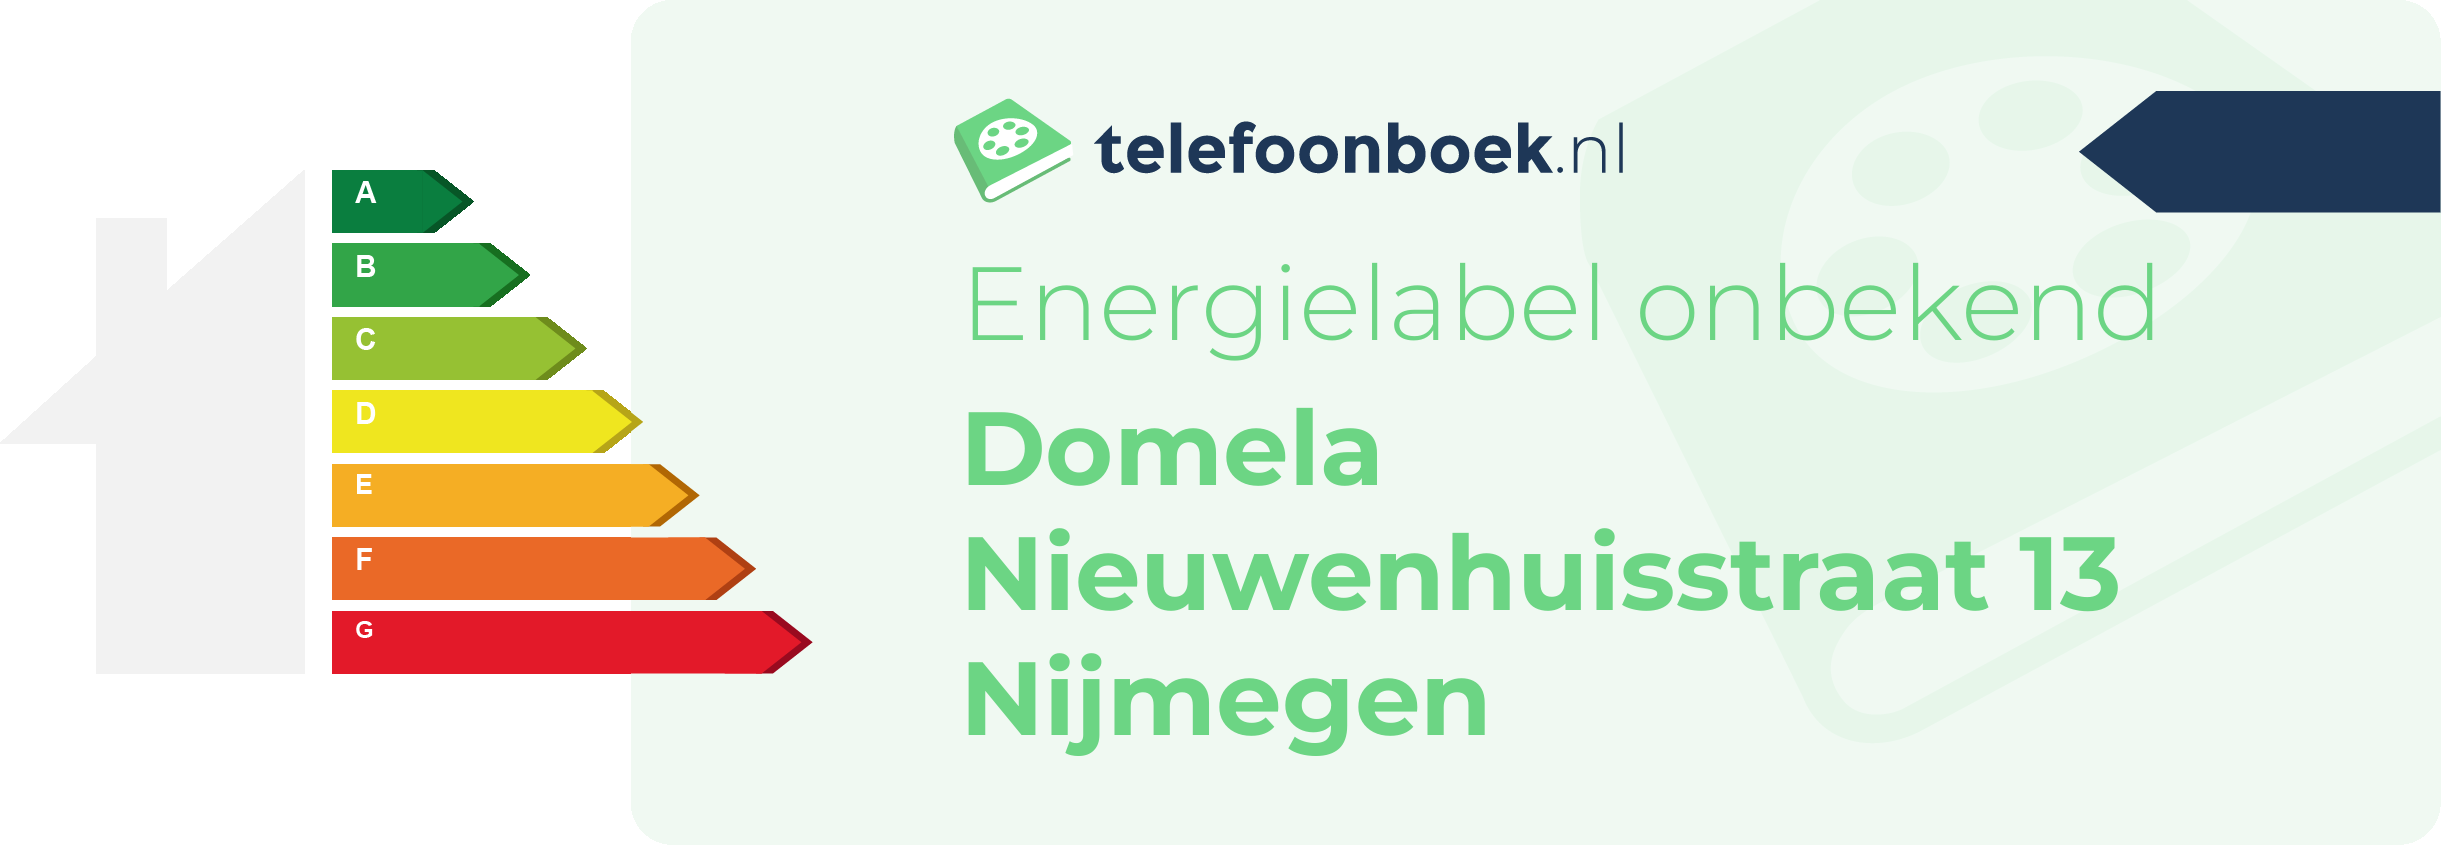 Energielabel Domela Nieuwenhuisstraat 13 Nijmegen